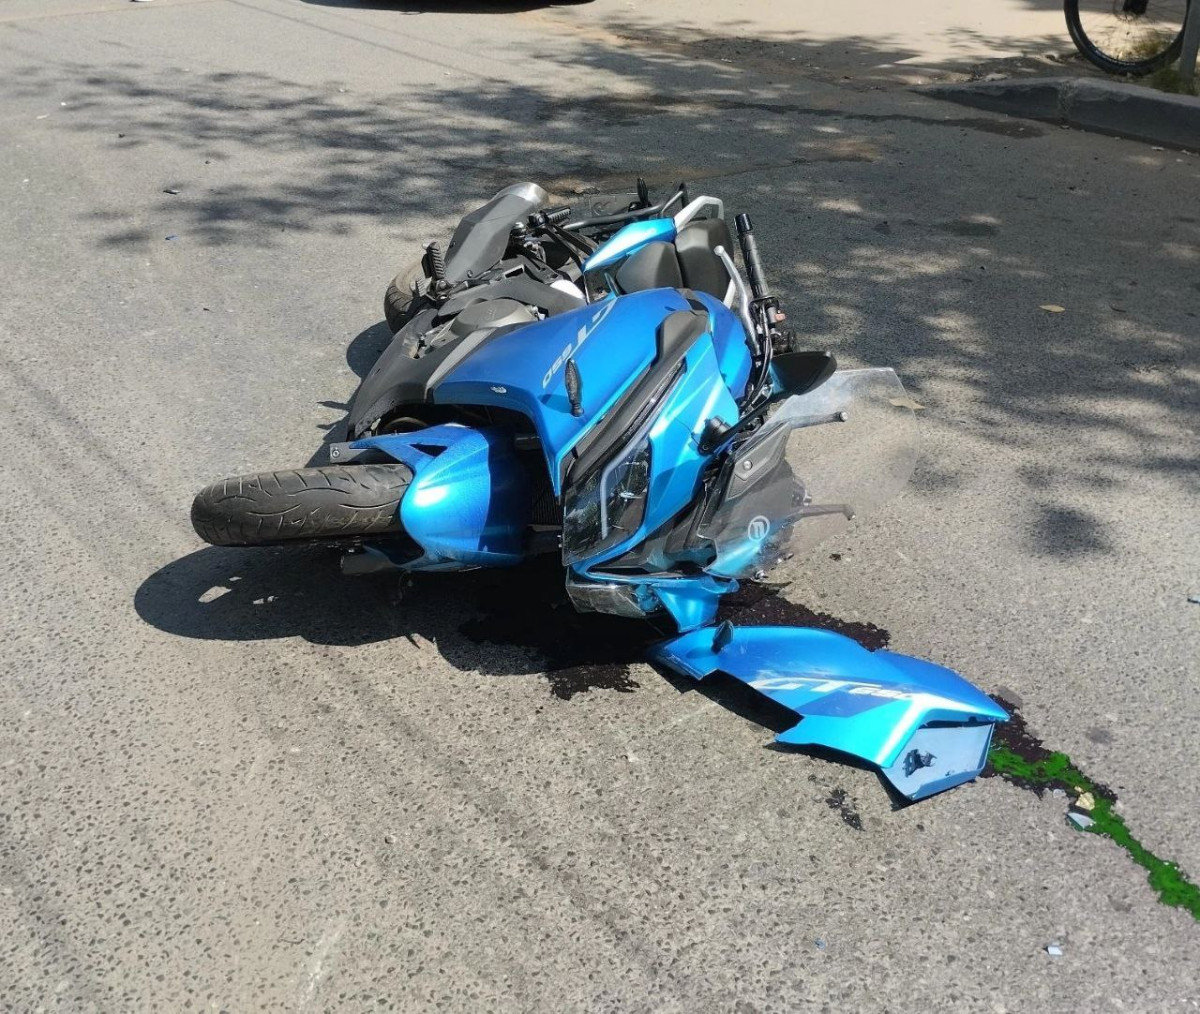 Два мотоциклиста попали в ДТП на дорогах Забайкалья 